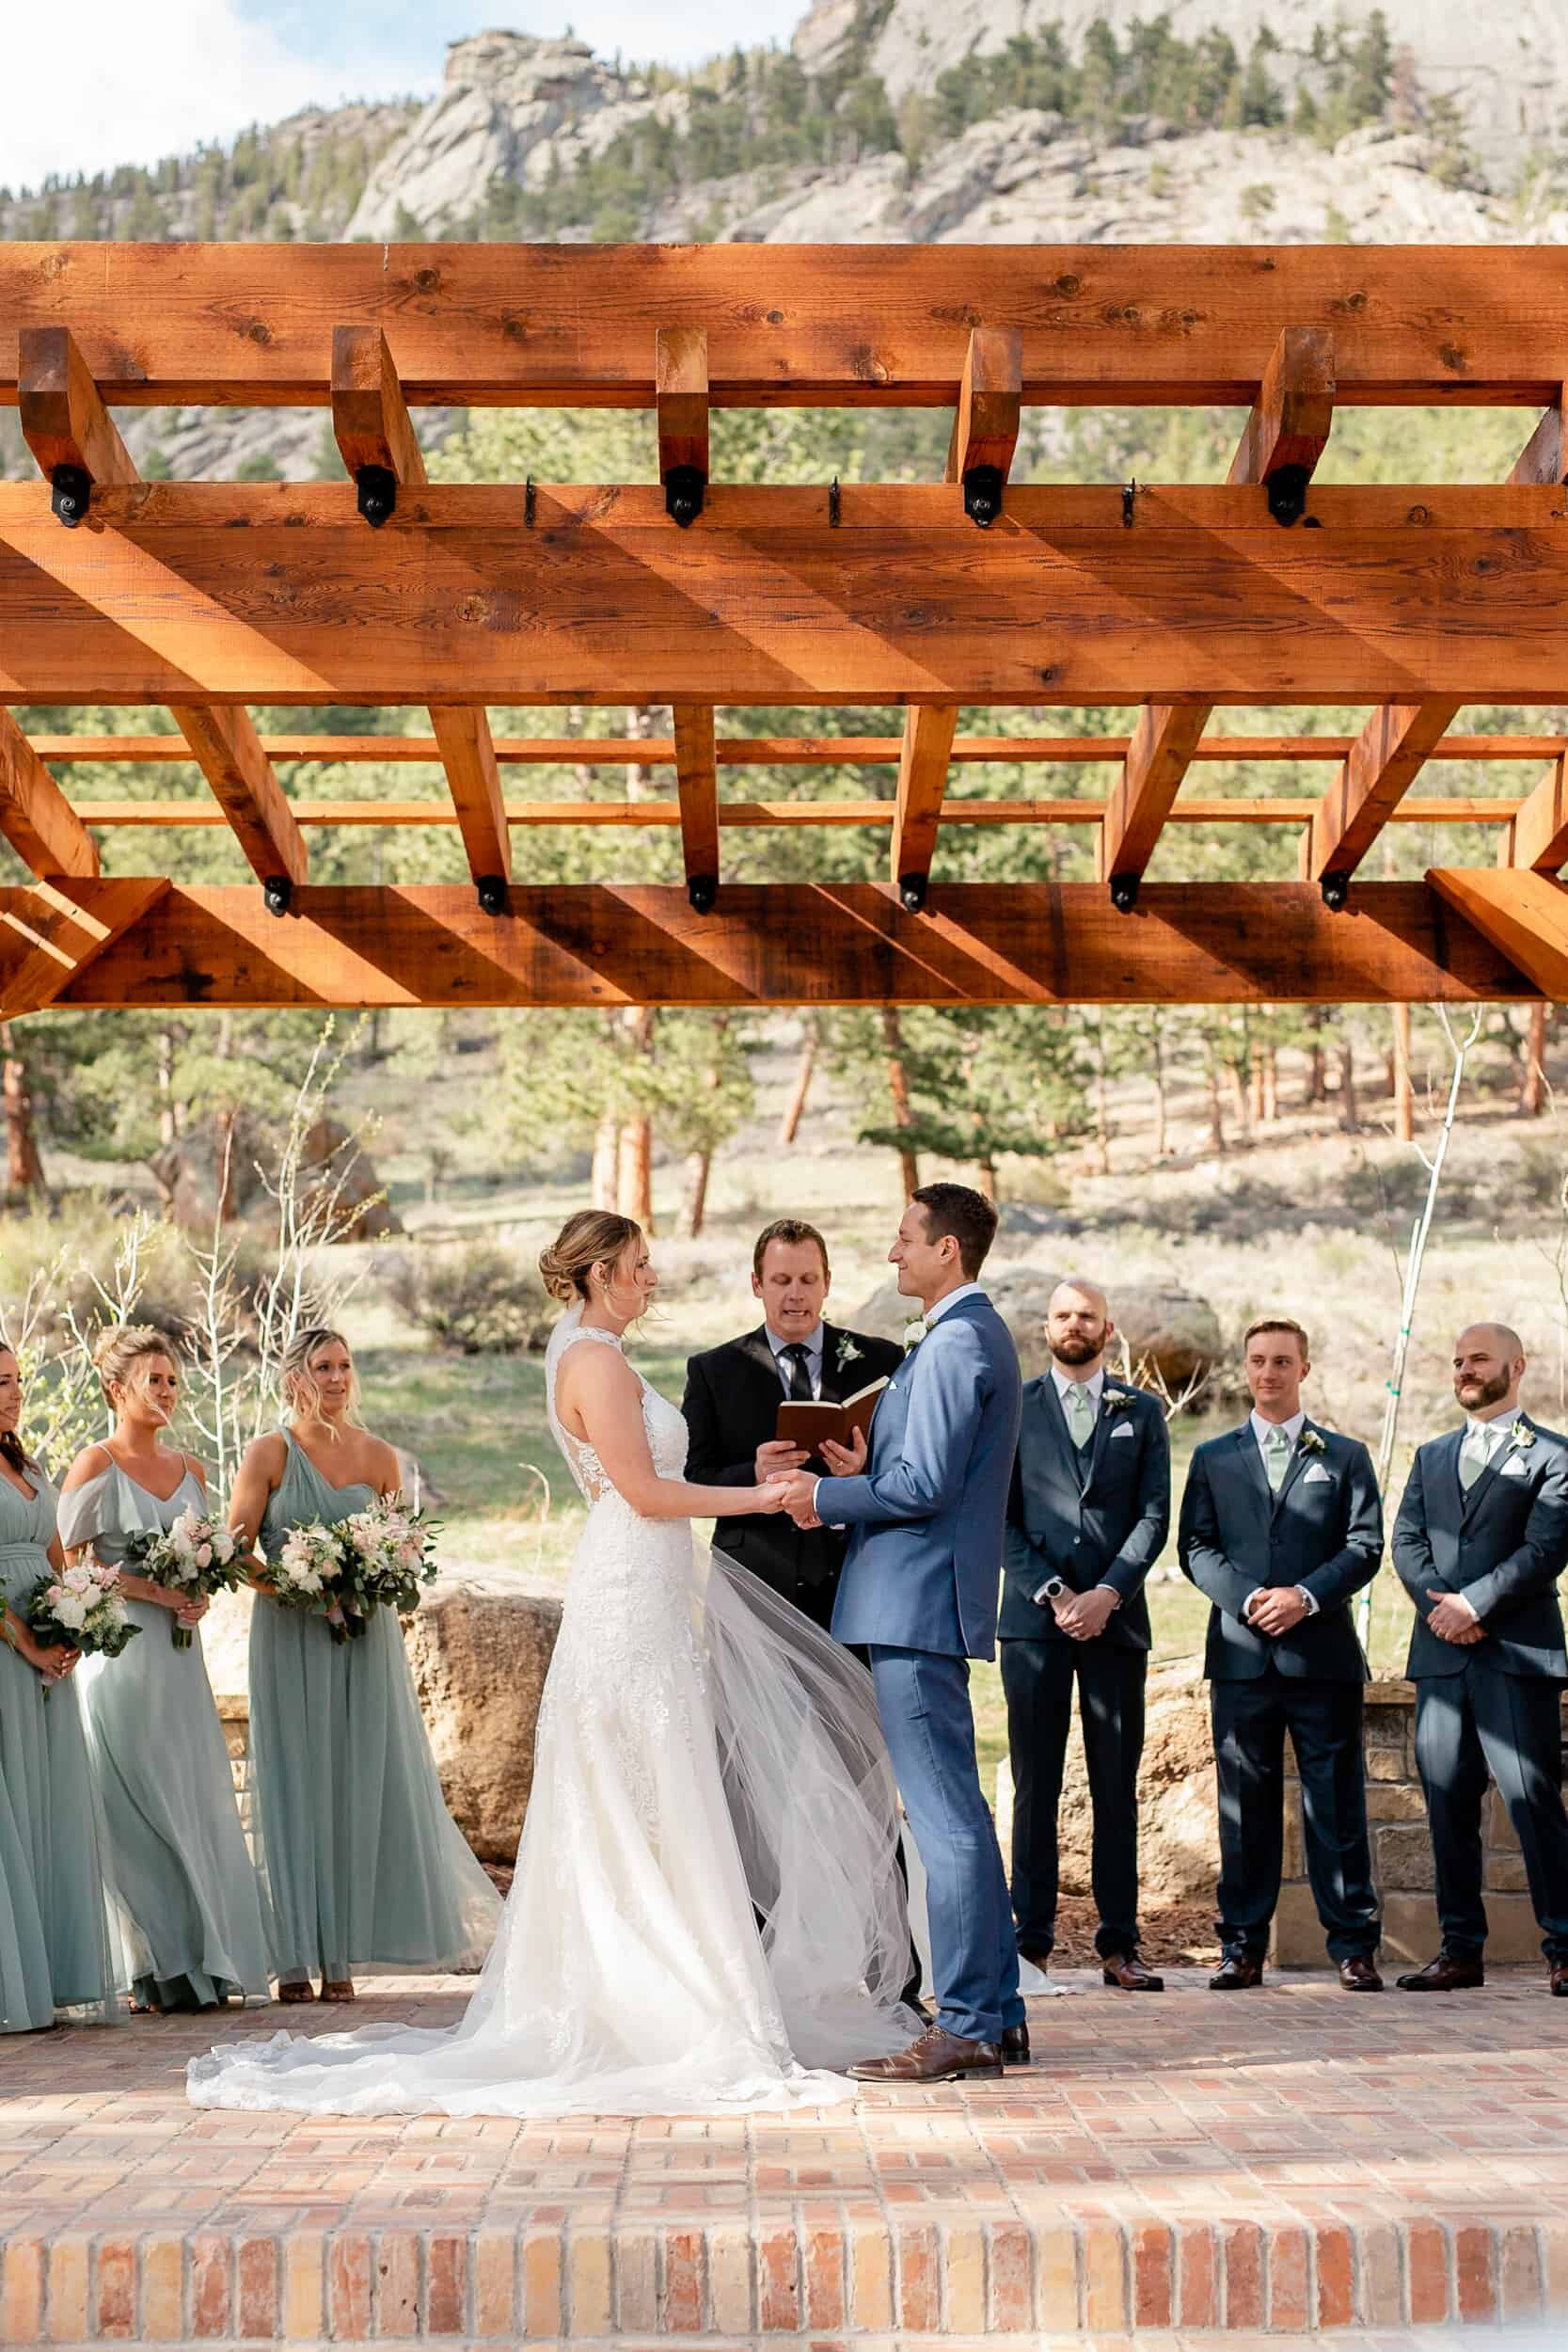 Della Terra Colorado Mountain Wedding Venue | Kyle Loves Tori Photography